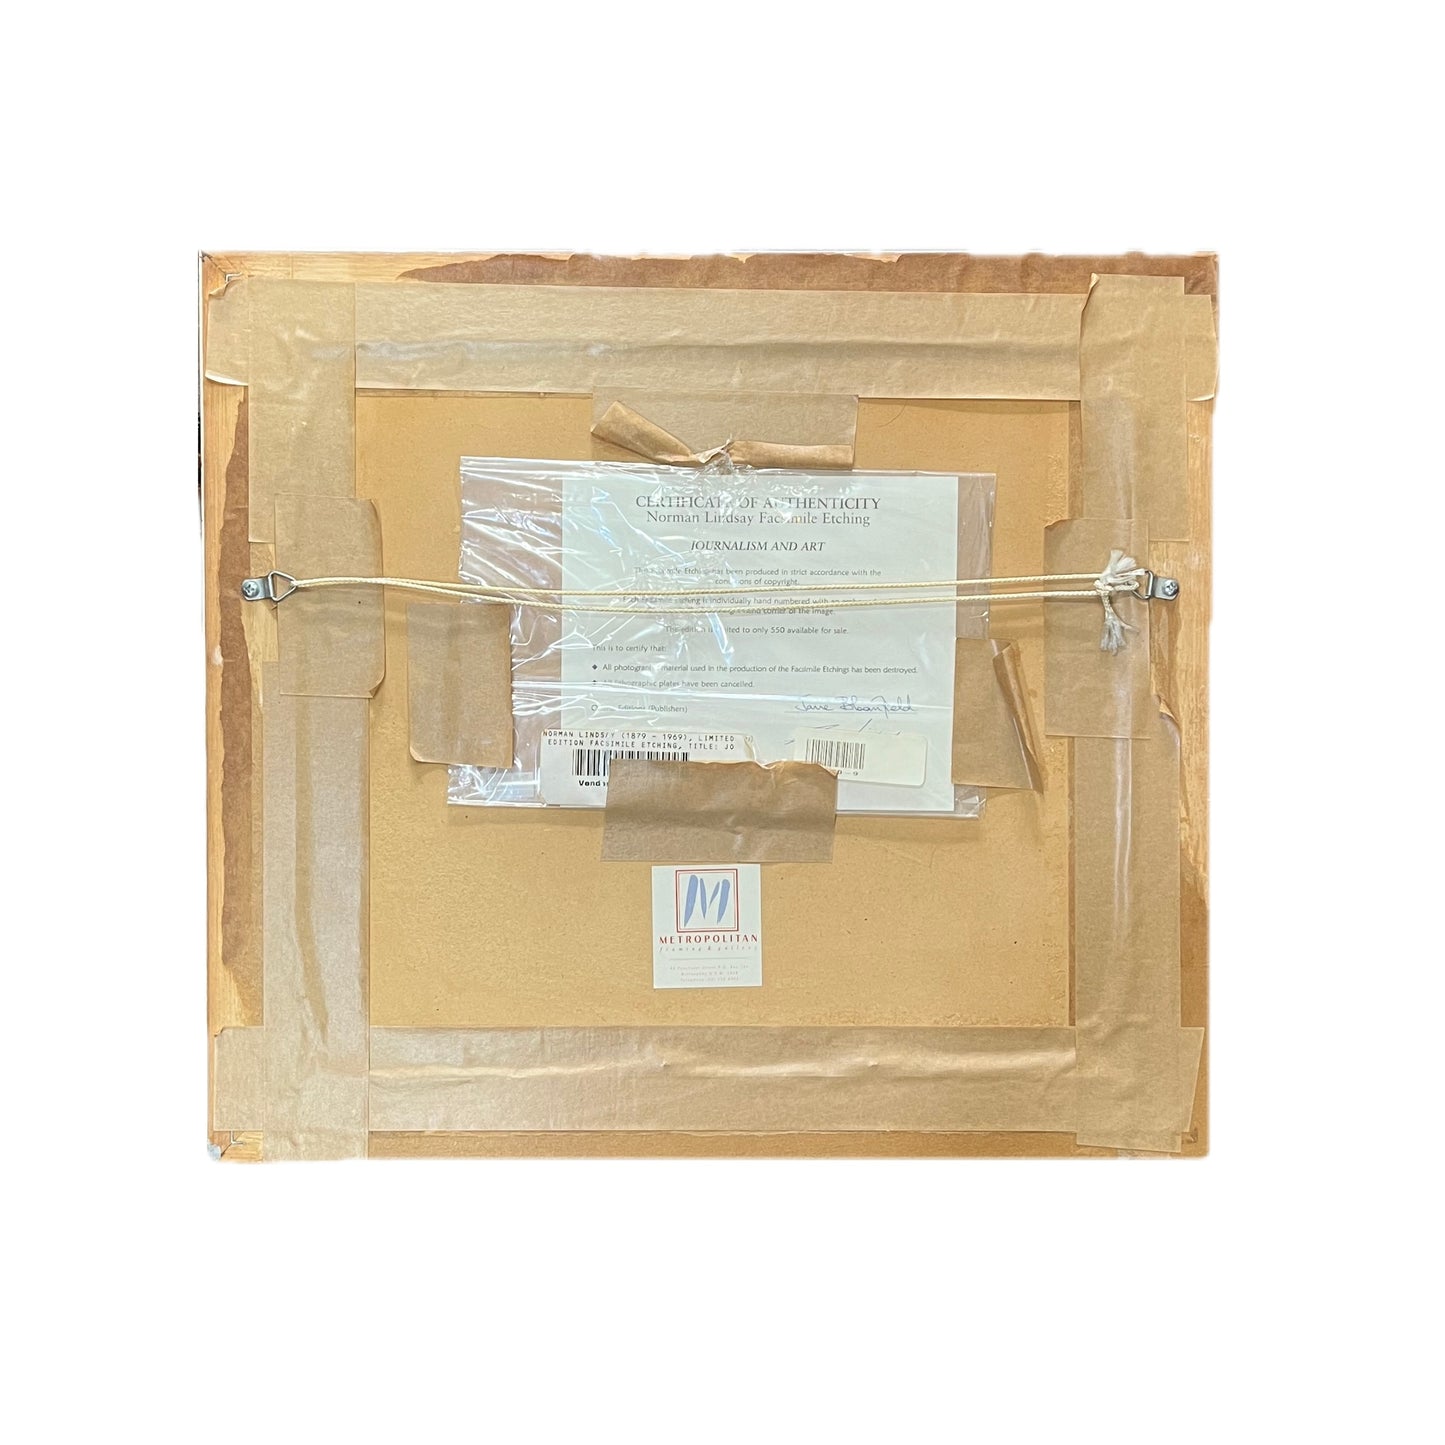 20 世纪诺曼·林赛 (Norman Lindsay) 的老式复制蚀刻画，题为“新闻与艺术”，约 1999 年